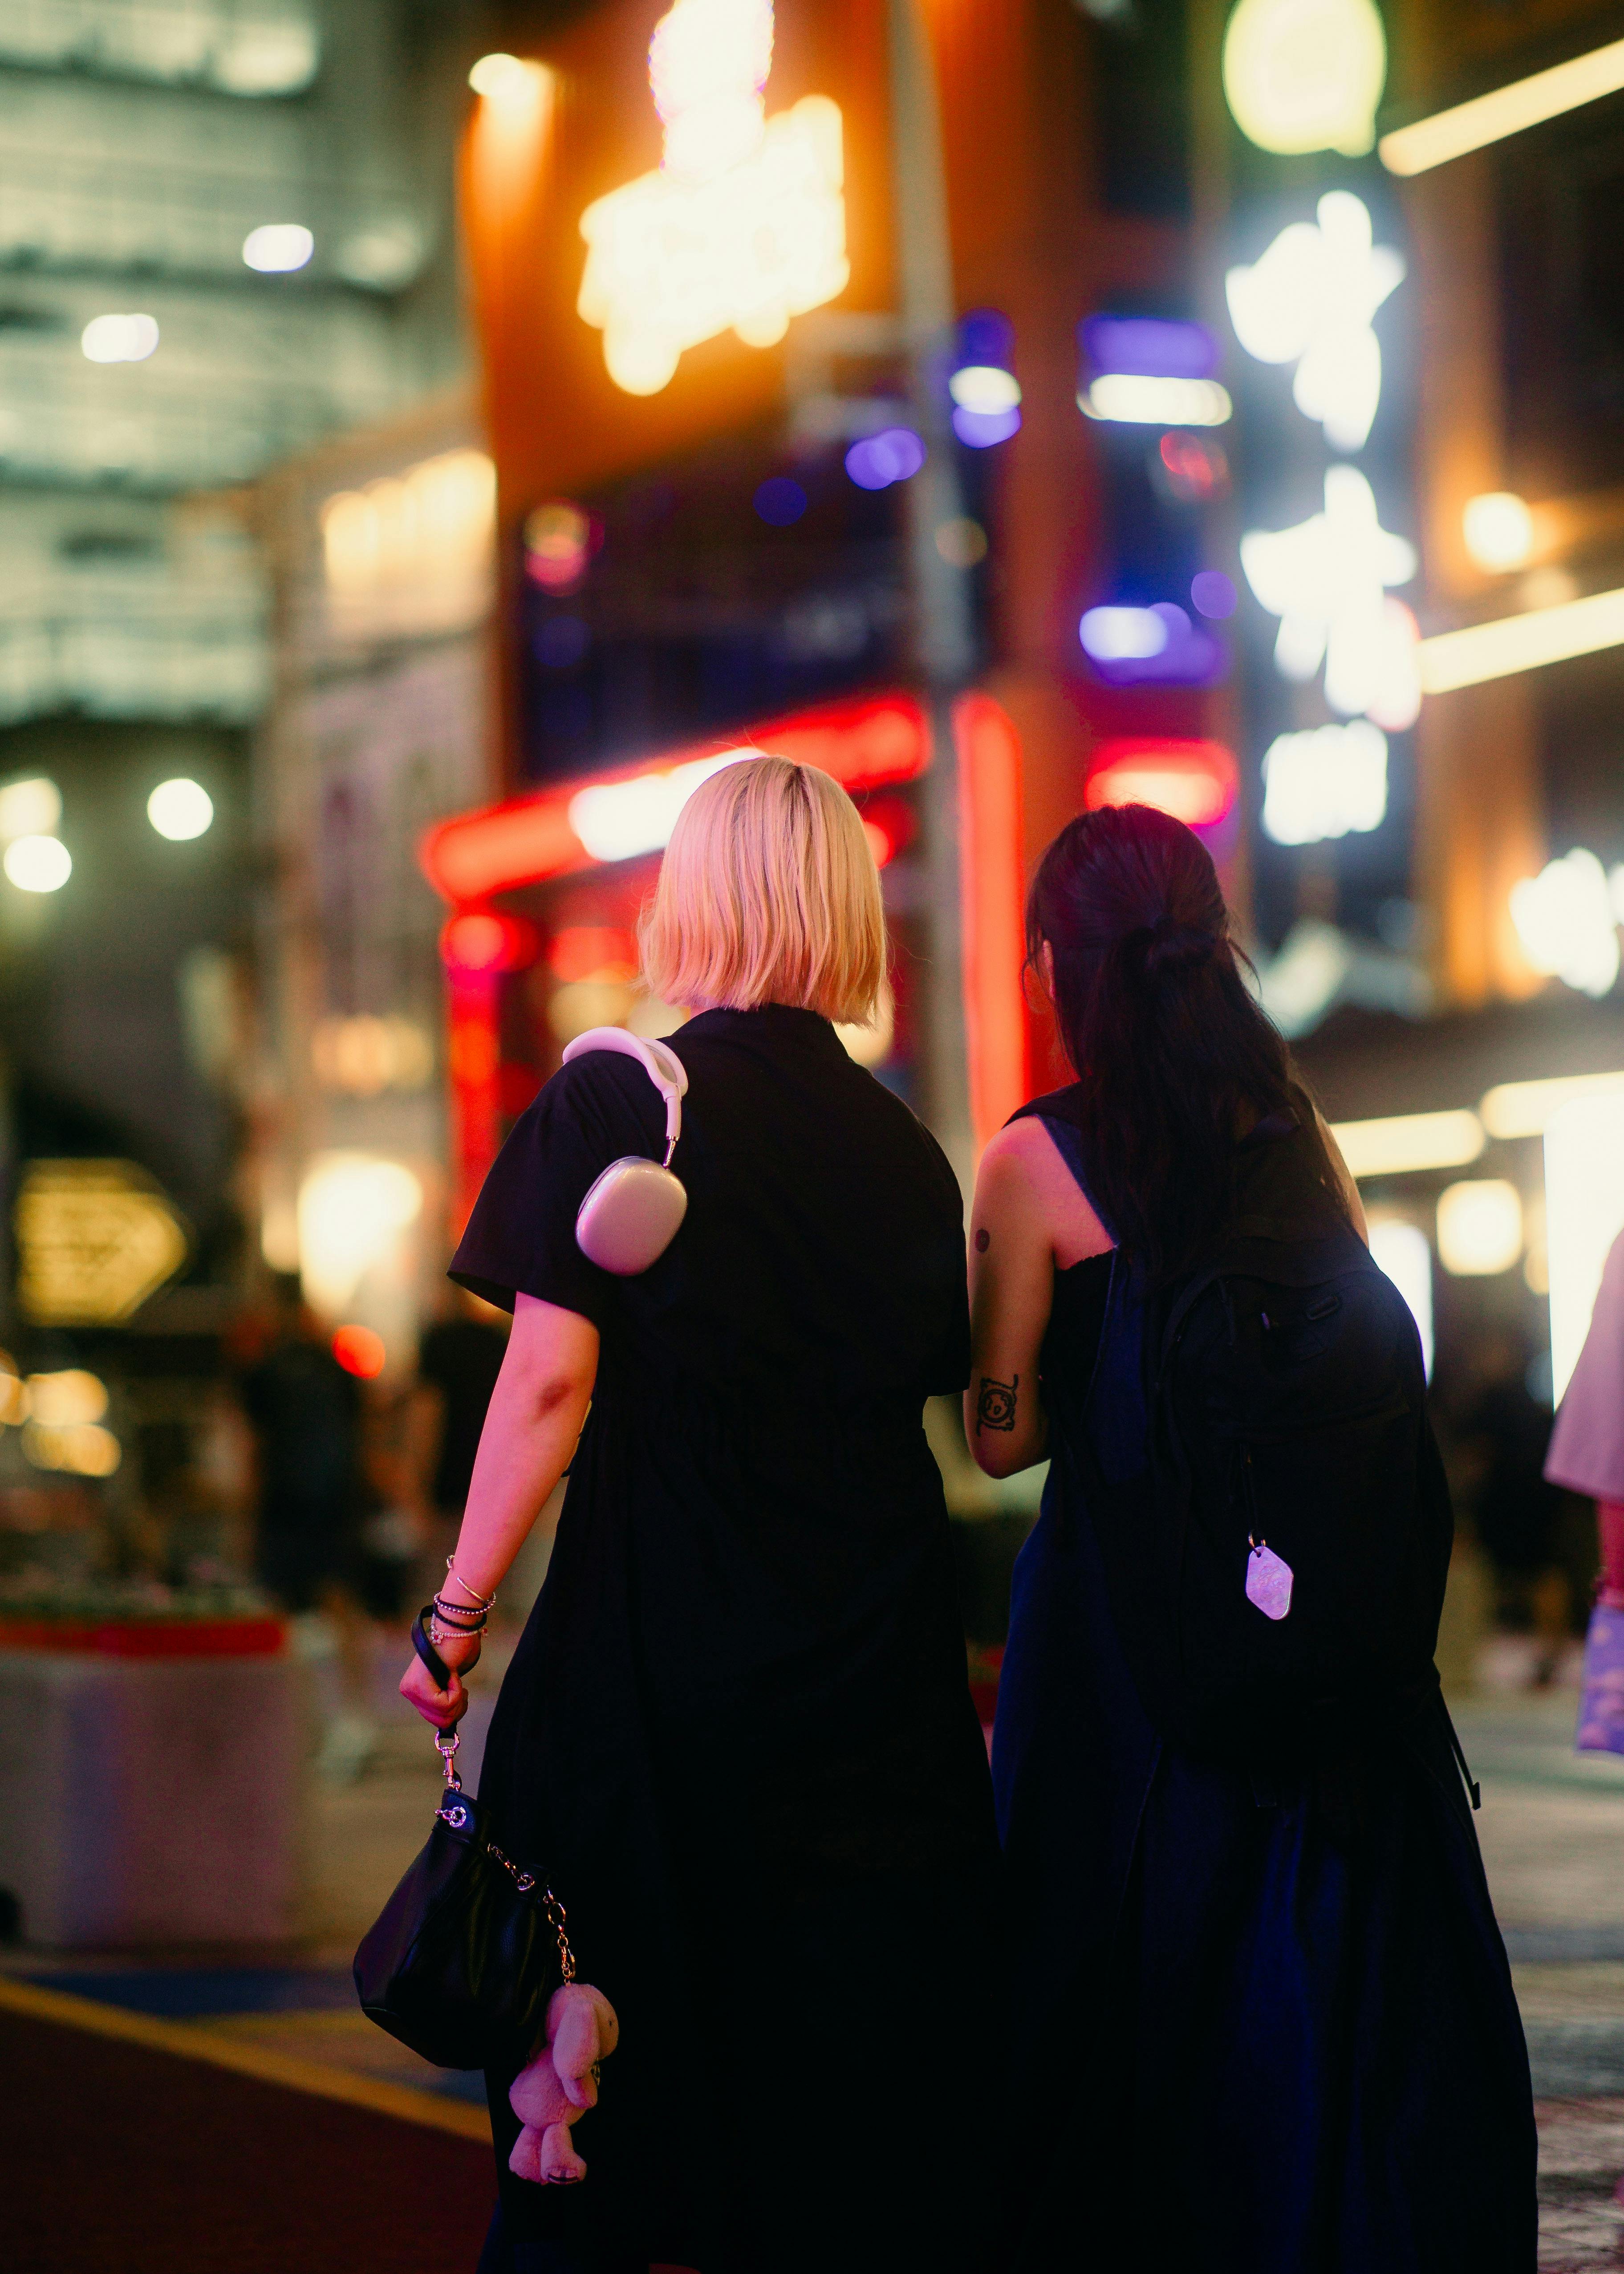 Two women walking in the street | Source: Pexels